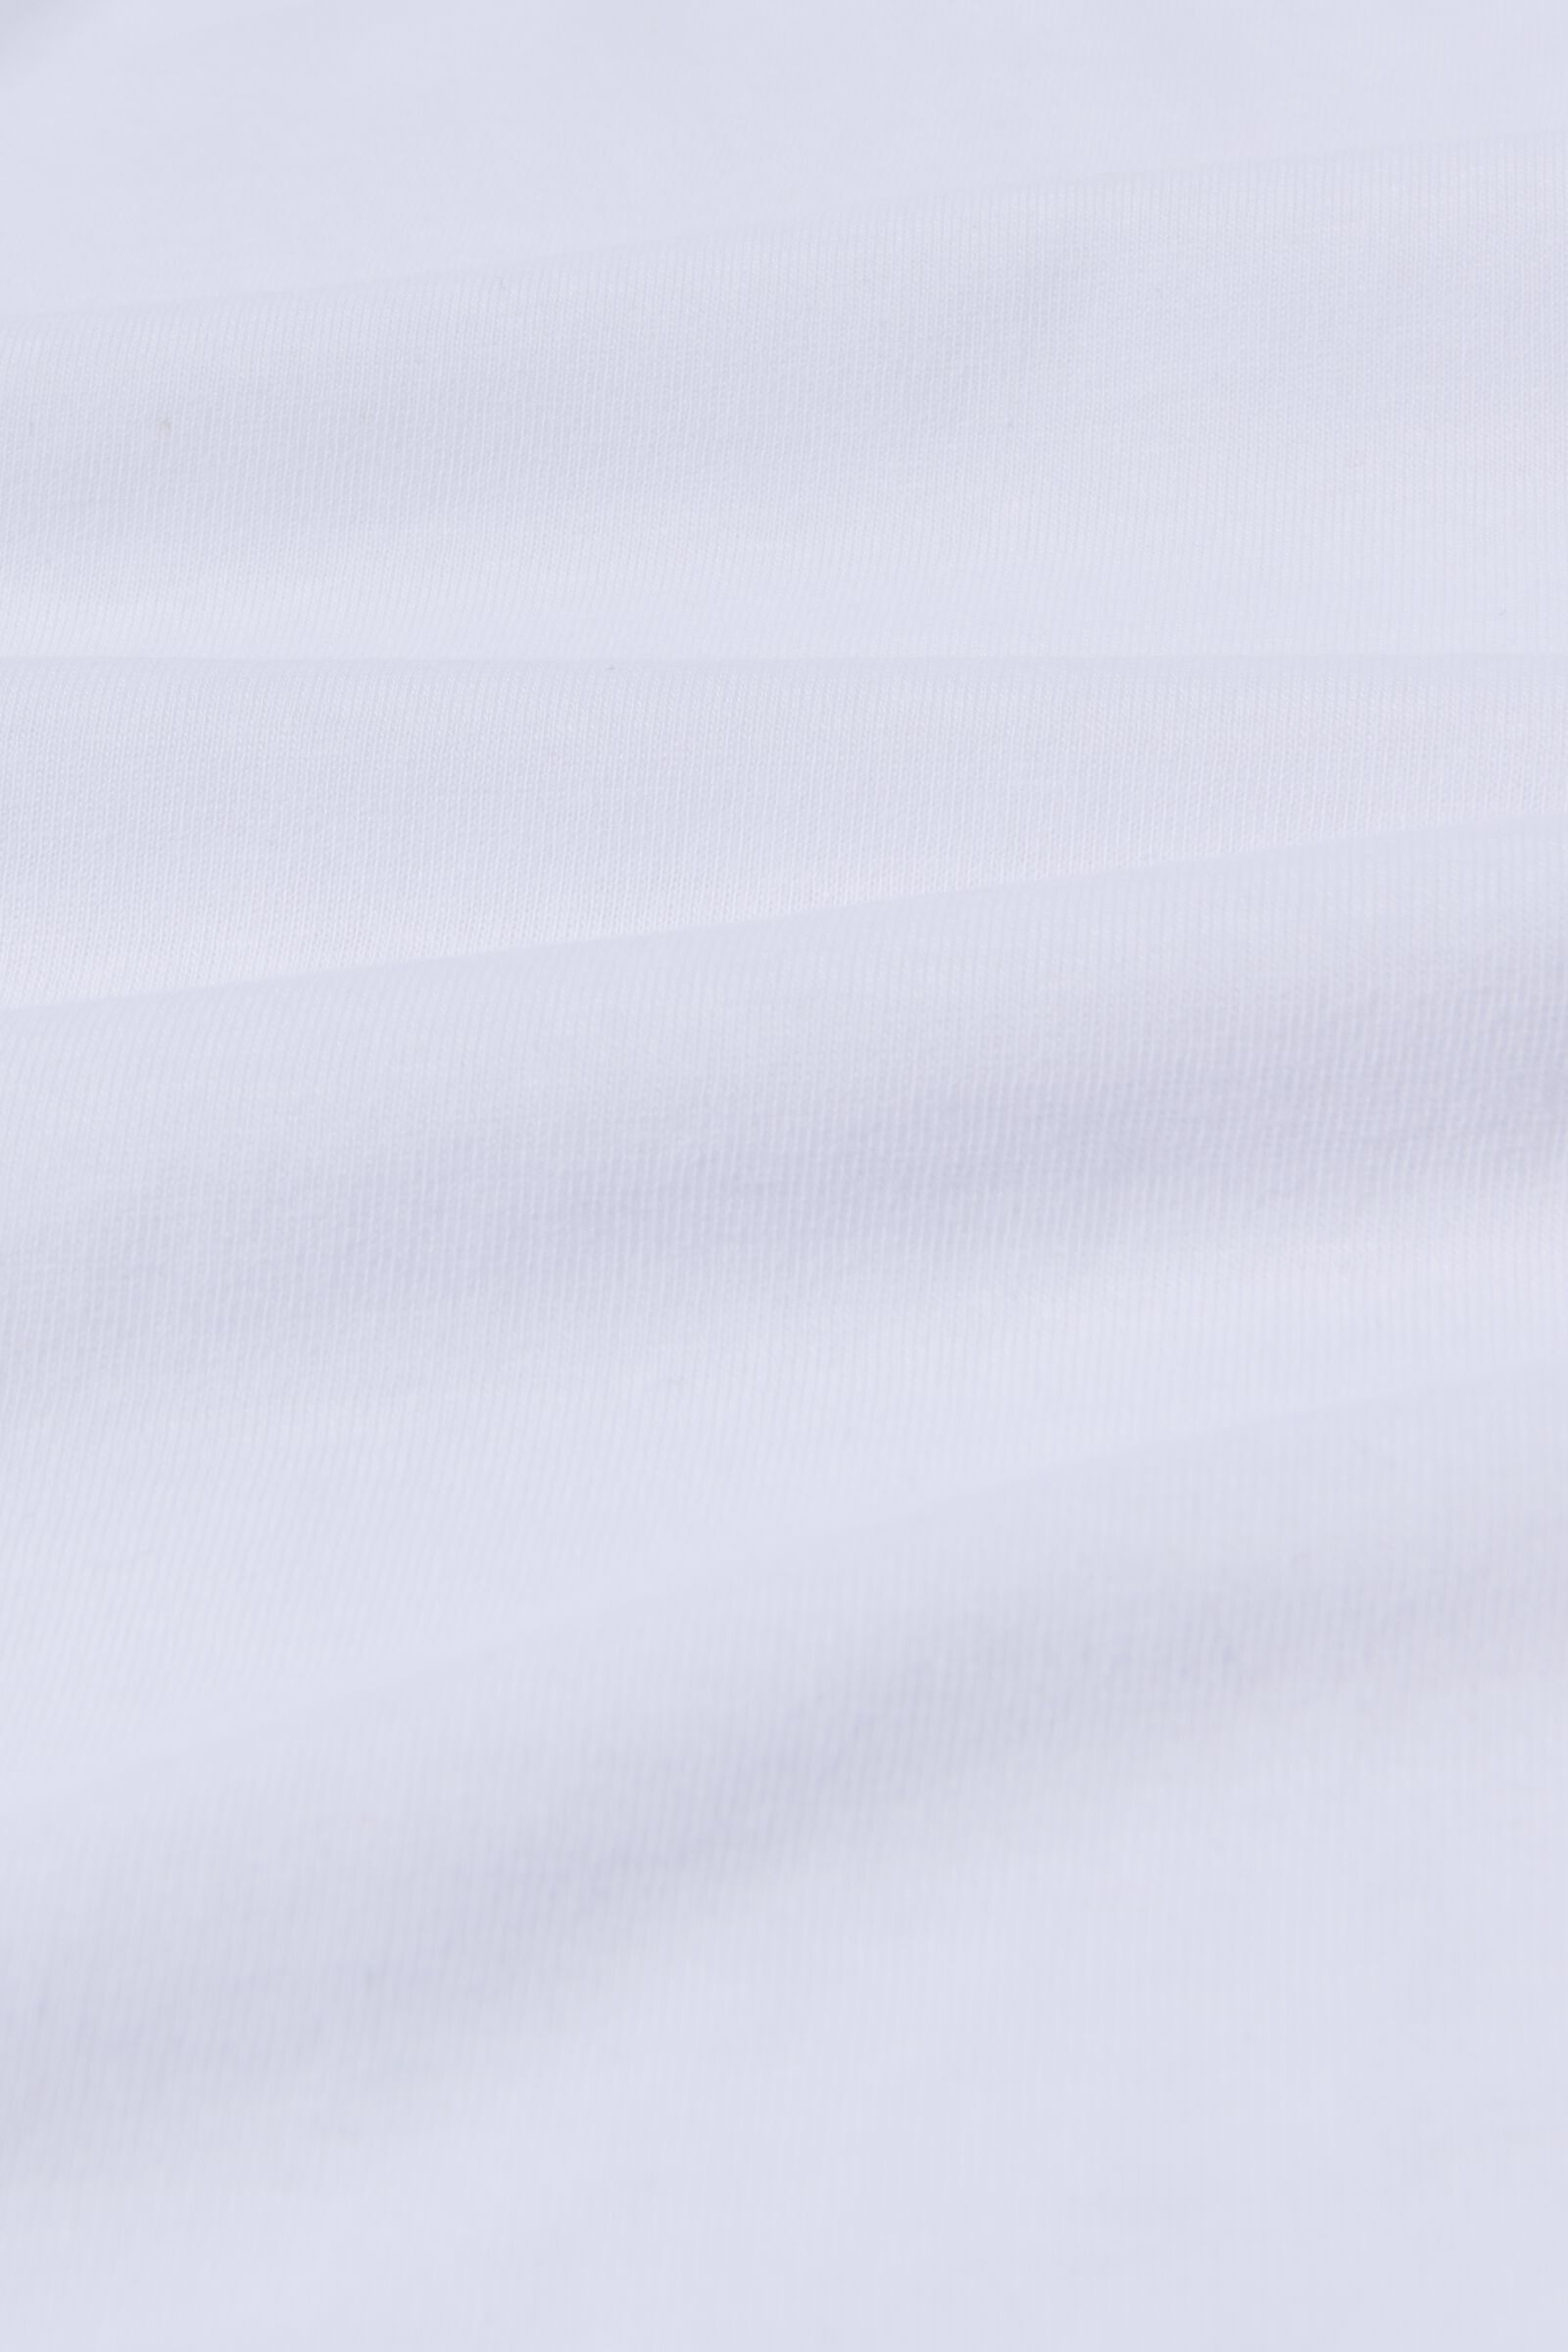 Spannbettlaken, Soft Cotton, 90 x 200 cm, weiß - 5190027 - HEMA